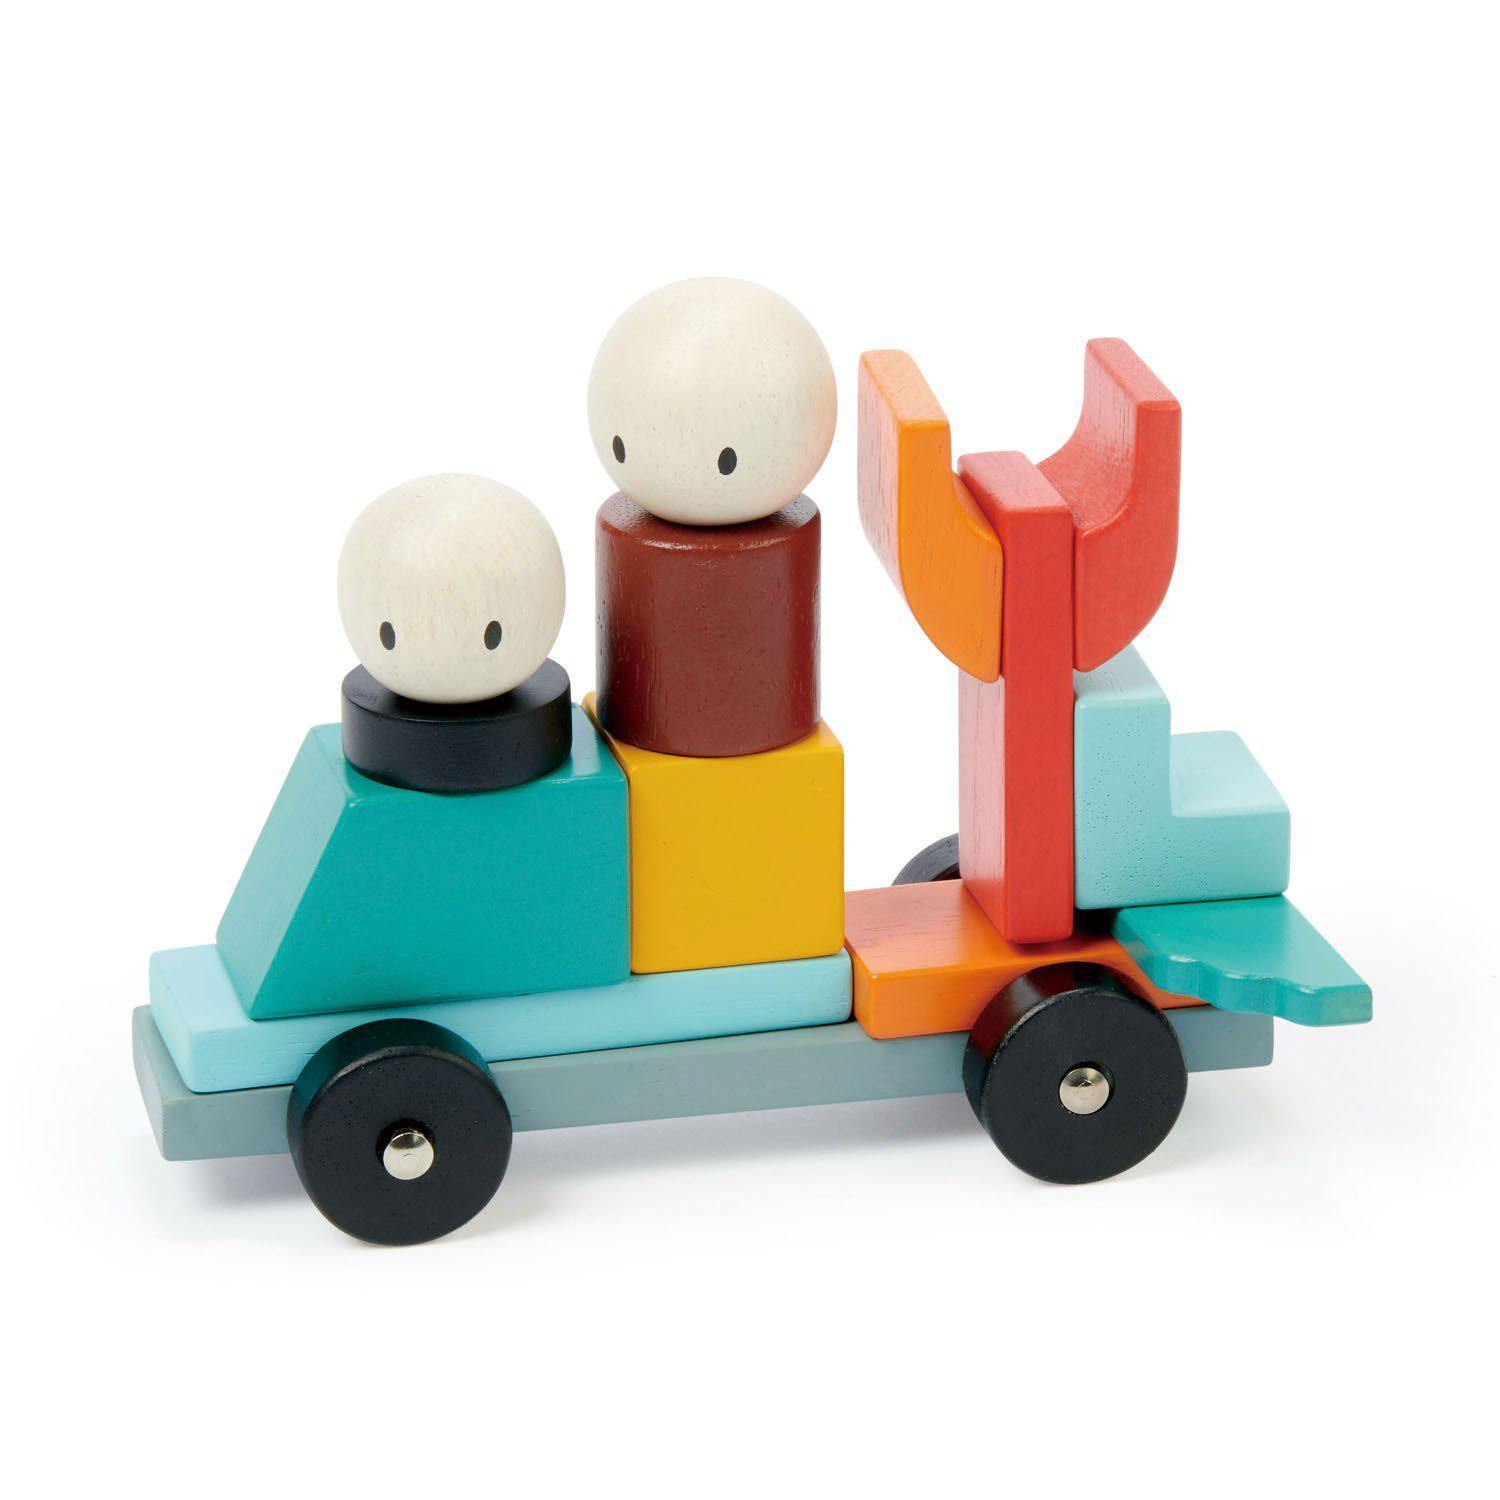 Racing Magblocks mágneses építő játék, prémium minőségű fából - Racing Magblocs - 14 darab -Tender Leaf Toys-Tender Leaf Toys-9-Játszma.ro - A maradandó élmények boltja